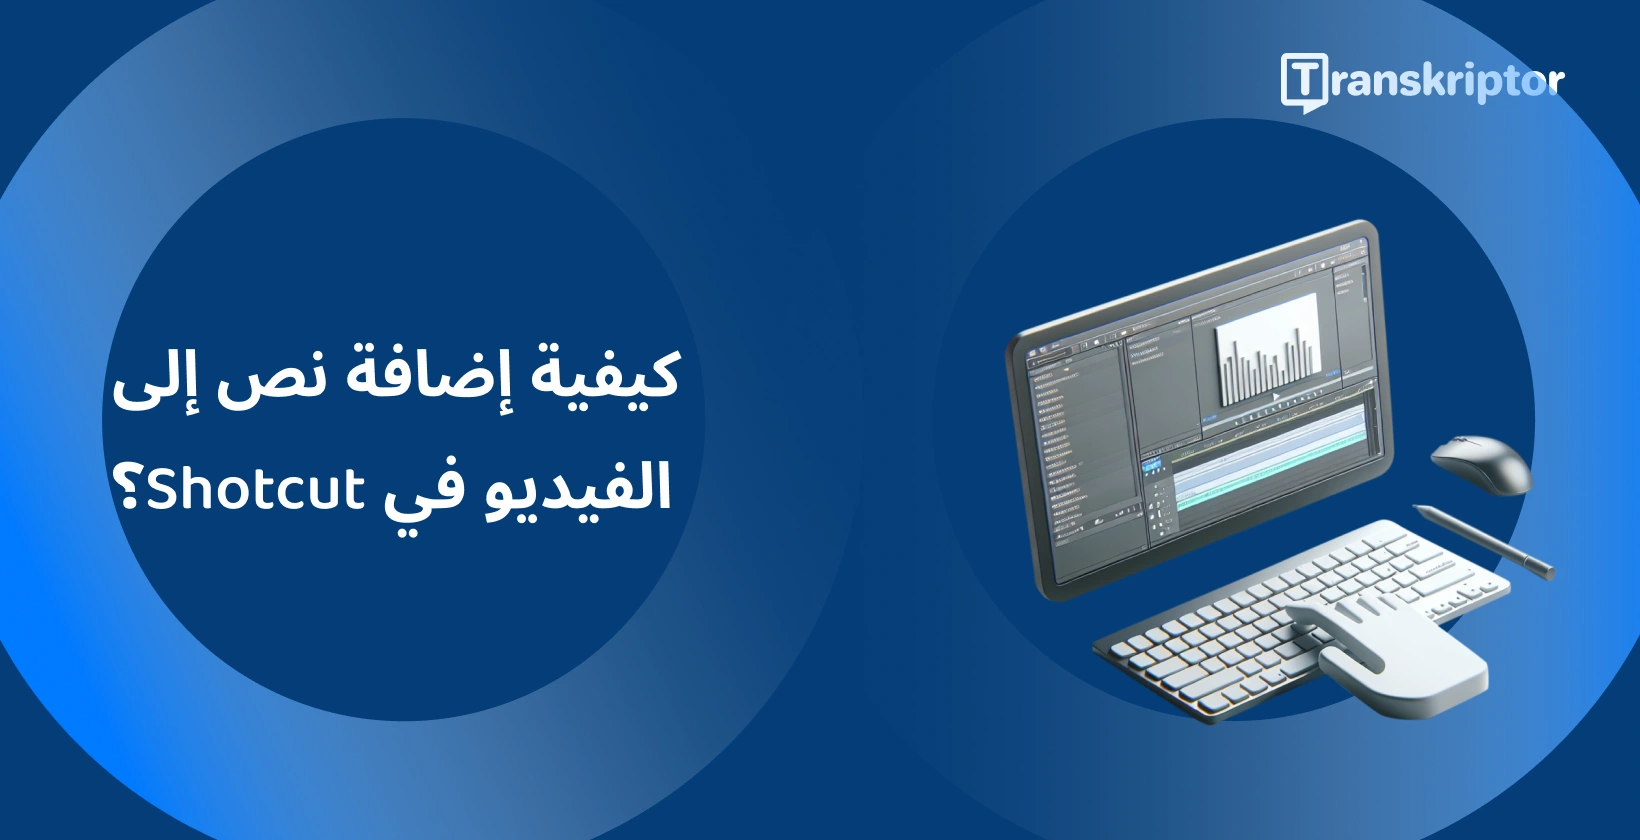 Shotcut برنامج تحرير الفيديو على شاشة مزودة بأدوات الشكل الموجي والنص ، لإضافة تسميات توضيحية وعناوين إلى مقاطع الفيديو.